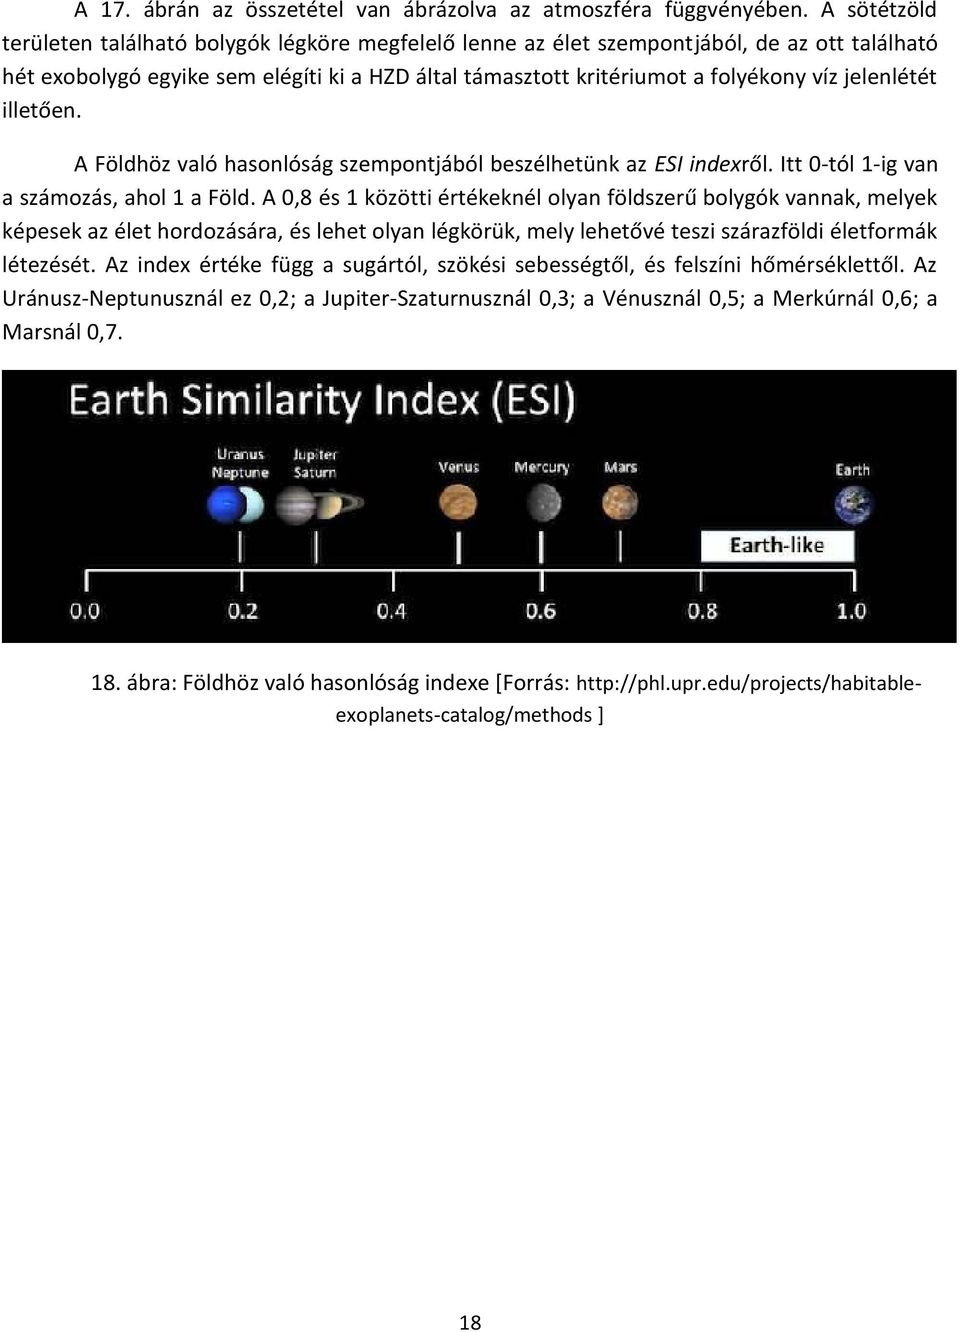 jelenlétét illetően. A Földhöz való hasonlóság szempontjából beszélhetünk az ESI indexről. Itt 0-tól 1-ig van a számozás, ahol 1 a Föld.